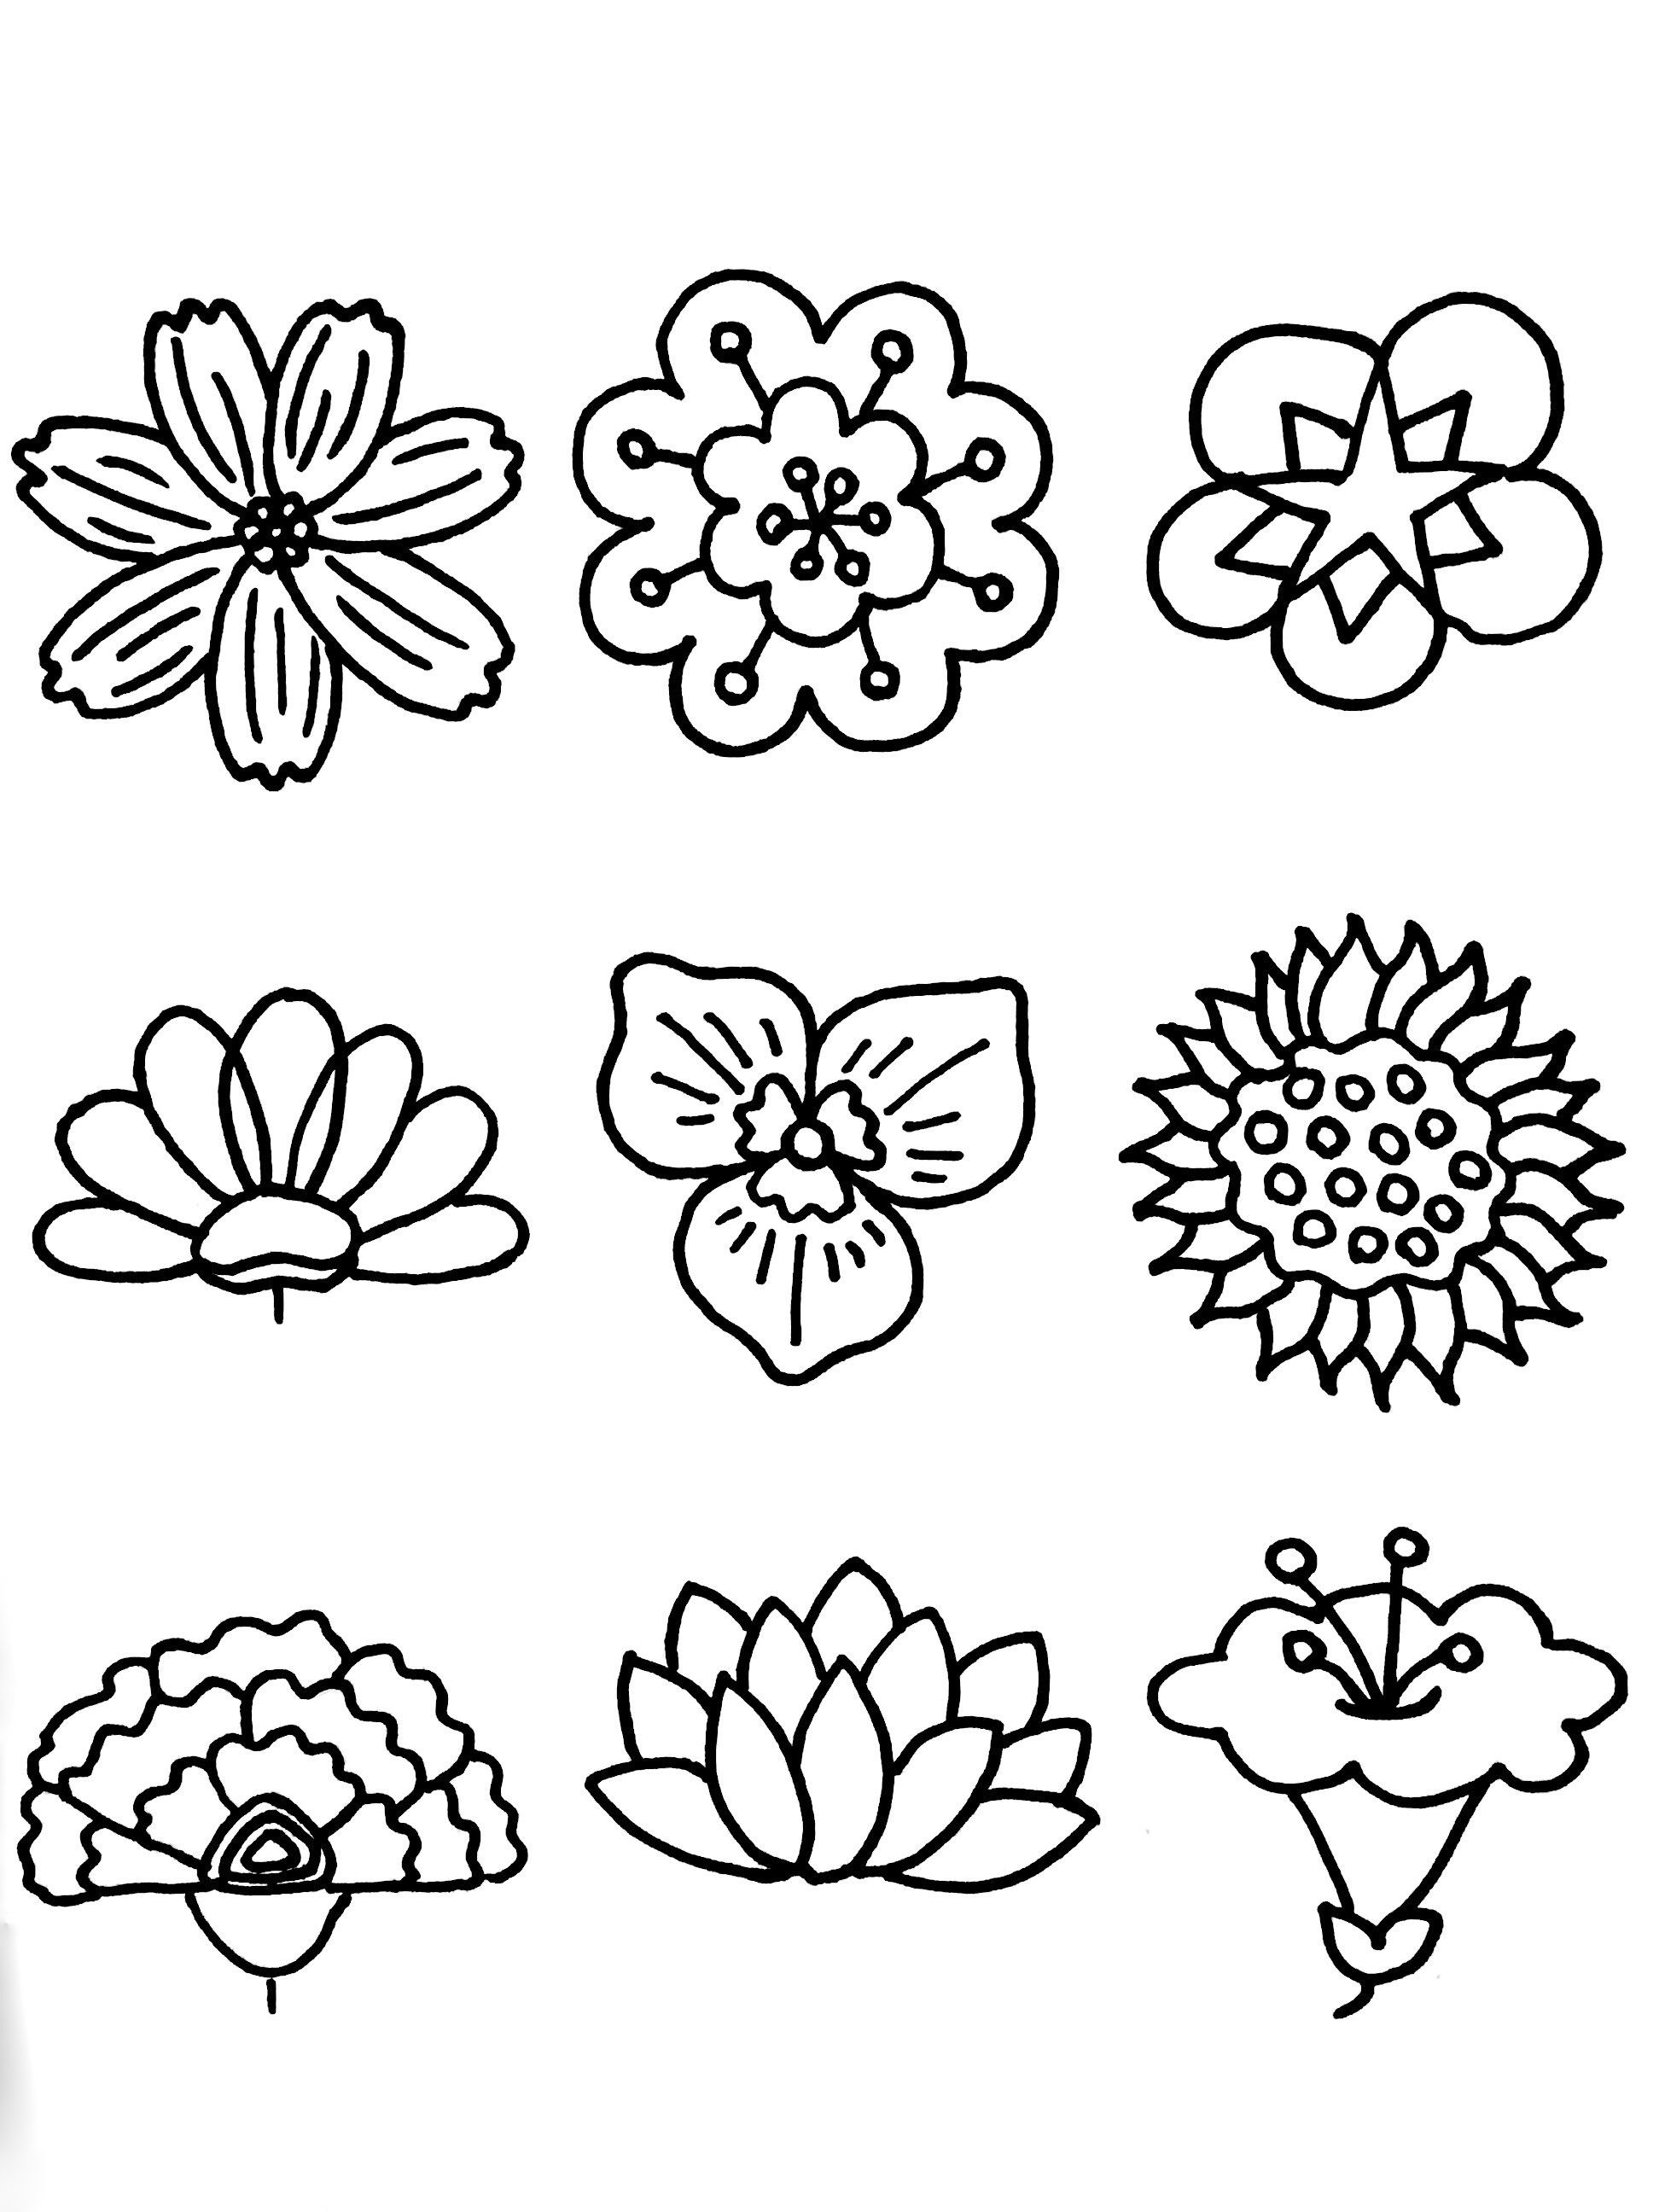 分享50种各类花朵的线描简笔画,值得收藏!